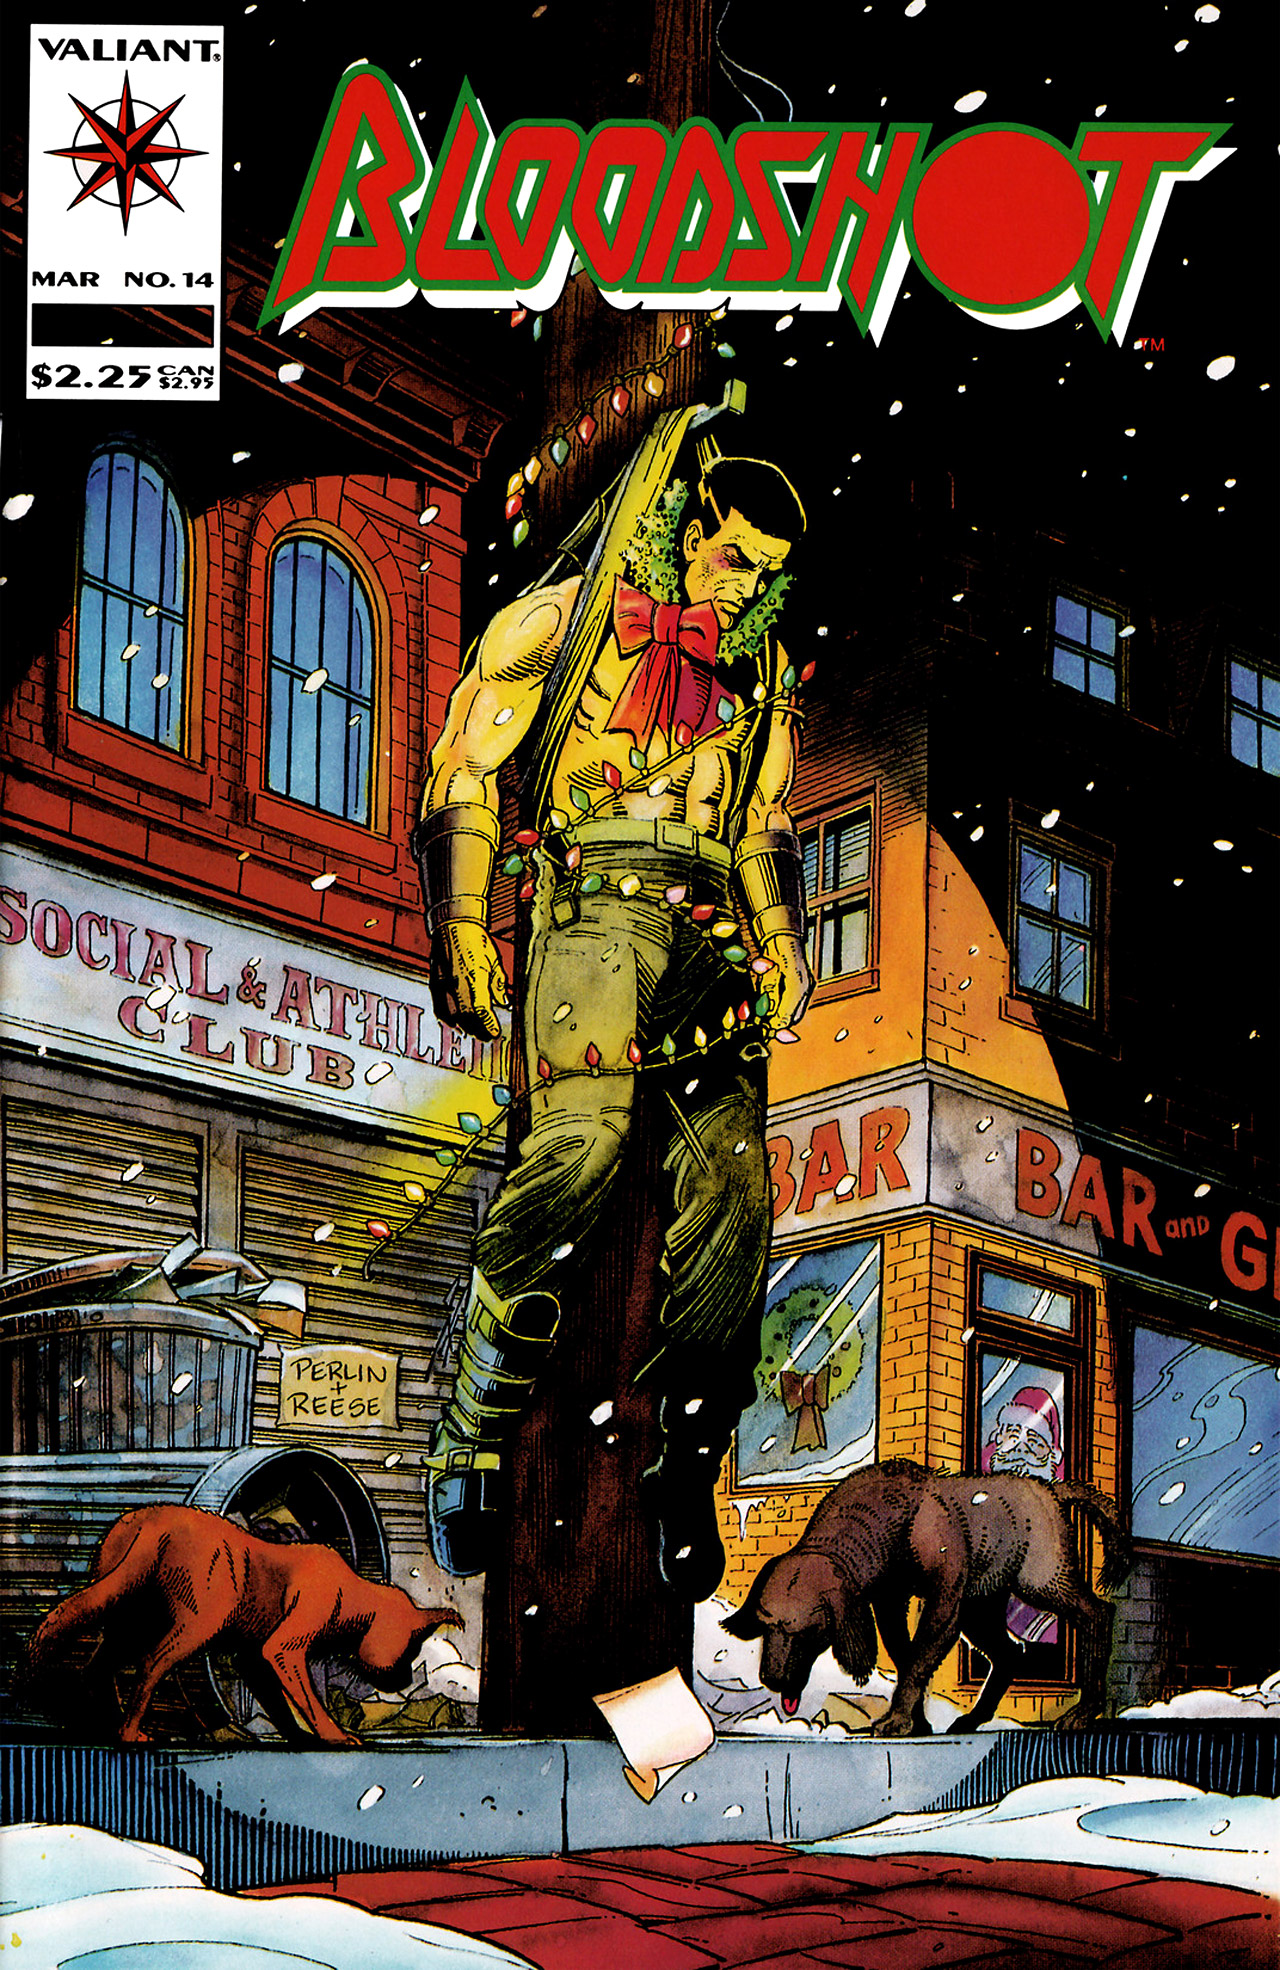 Bloodshot (1993) Issue #14 #16 - English 1